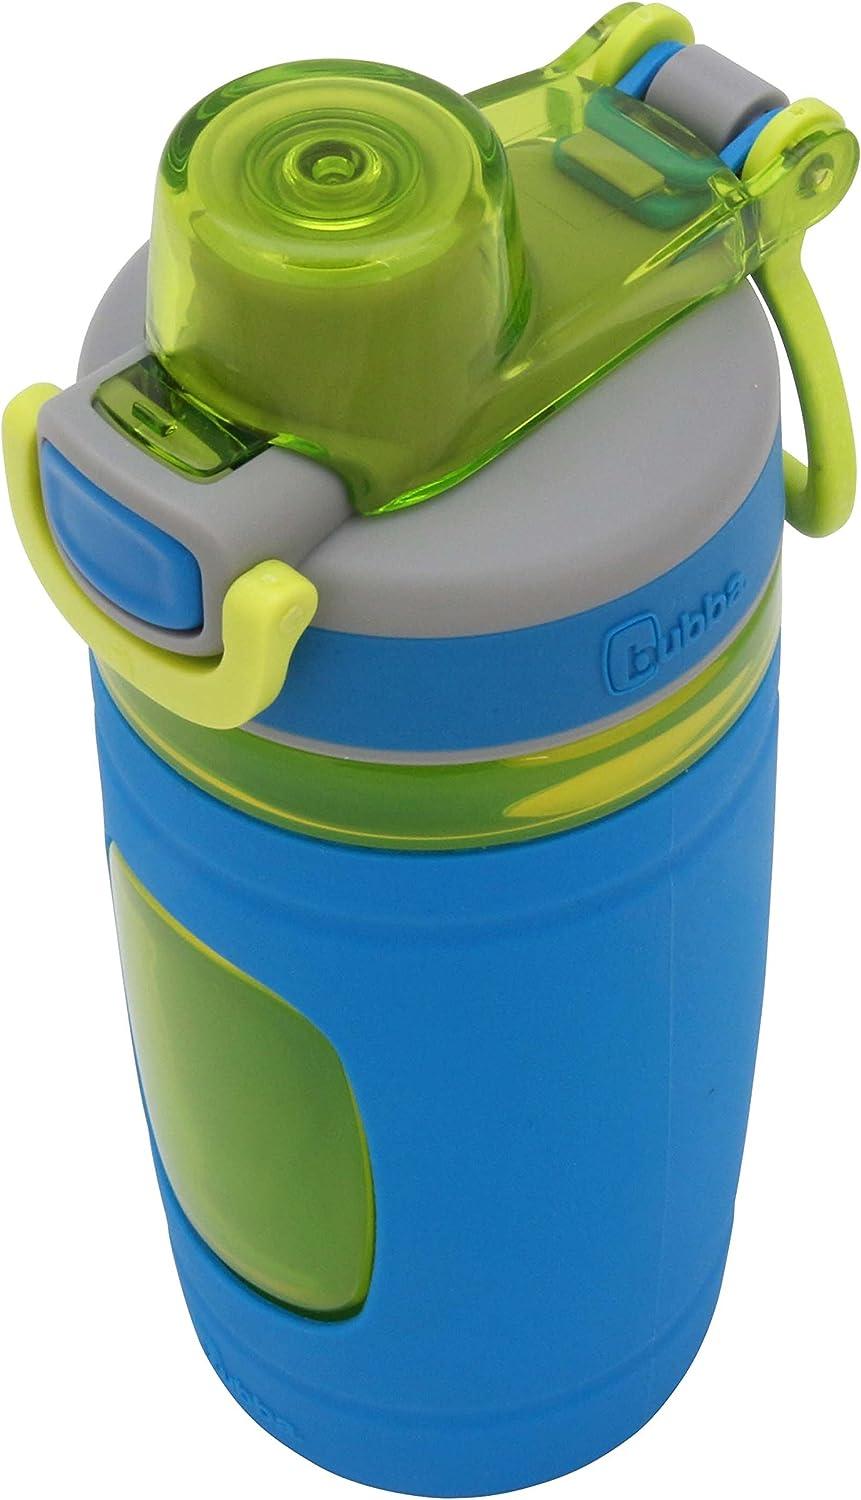 Lavex 16 oz. Green Plastic Bottle / Sprayer - 3/Pack